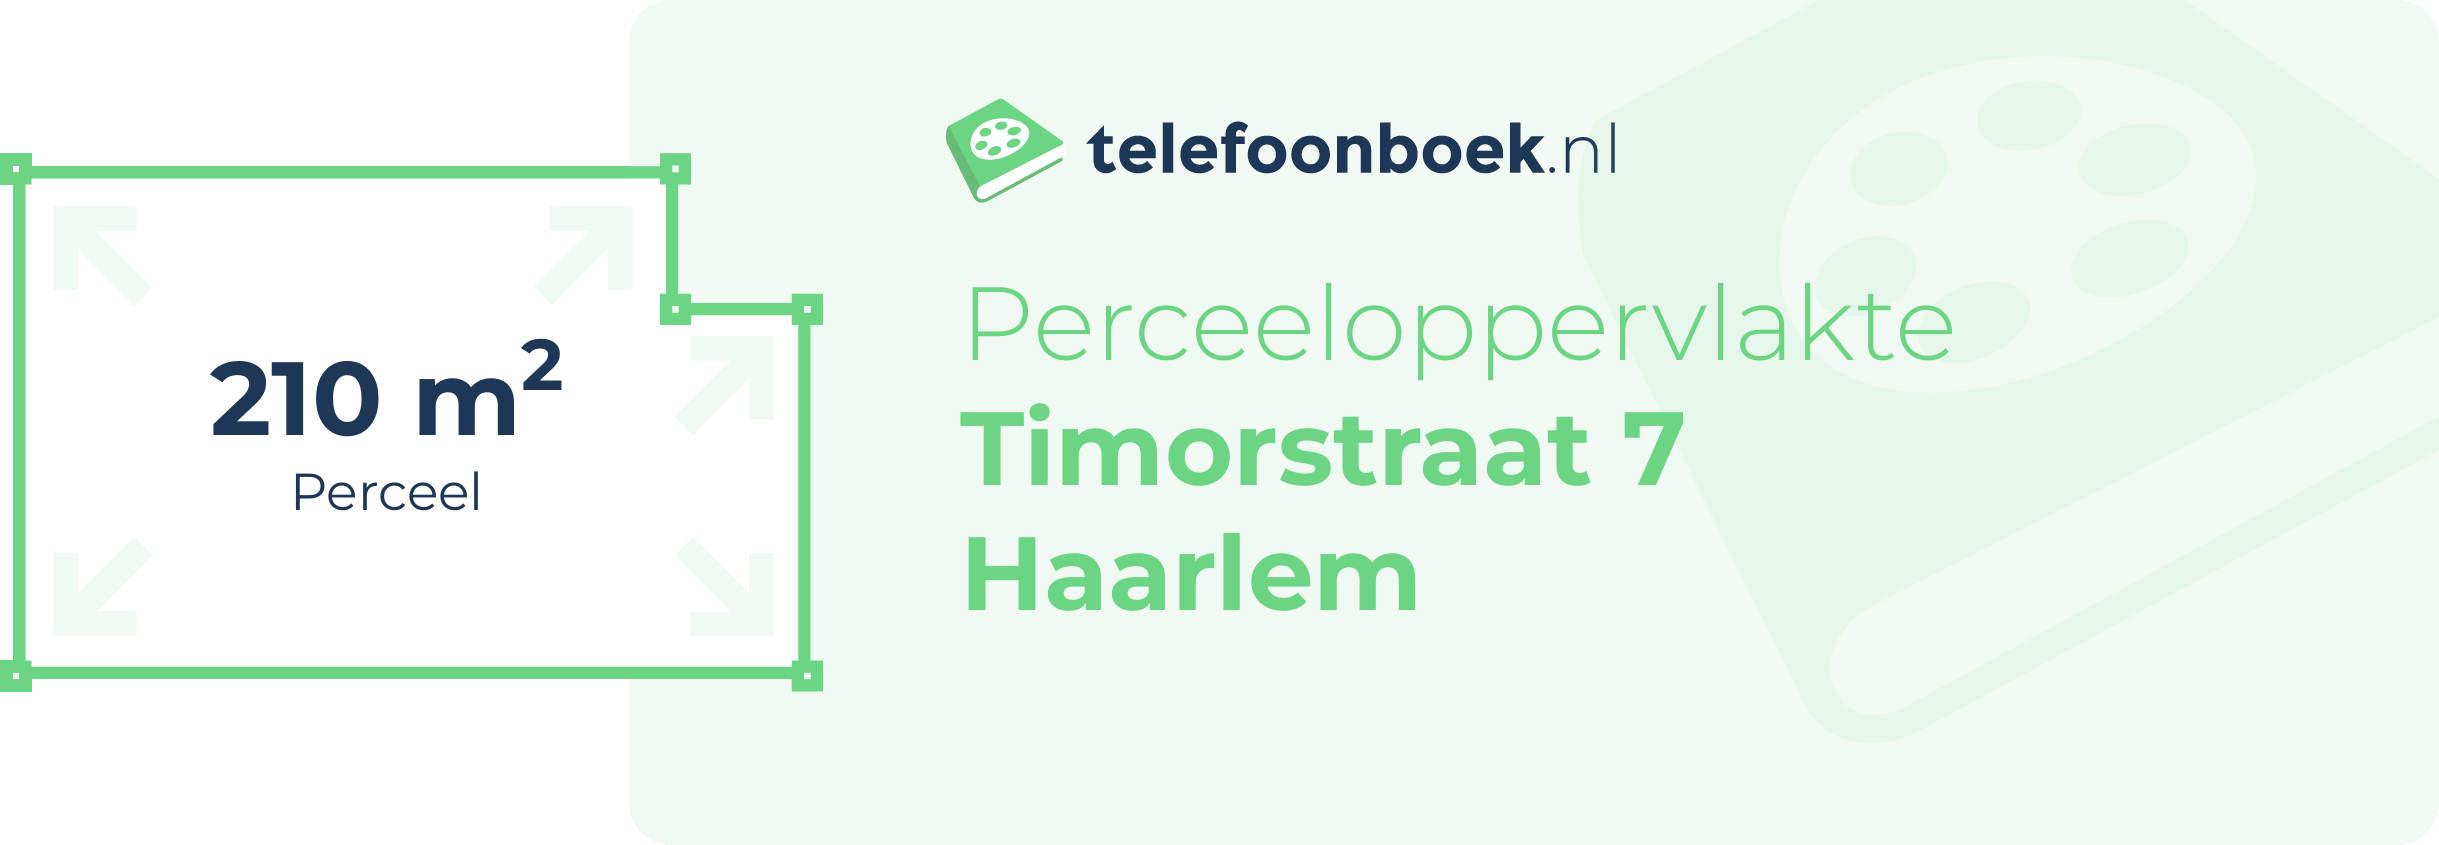 Perceeloppervlakte Timorstraat 7 Haarlem